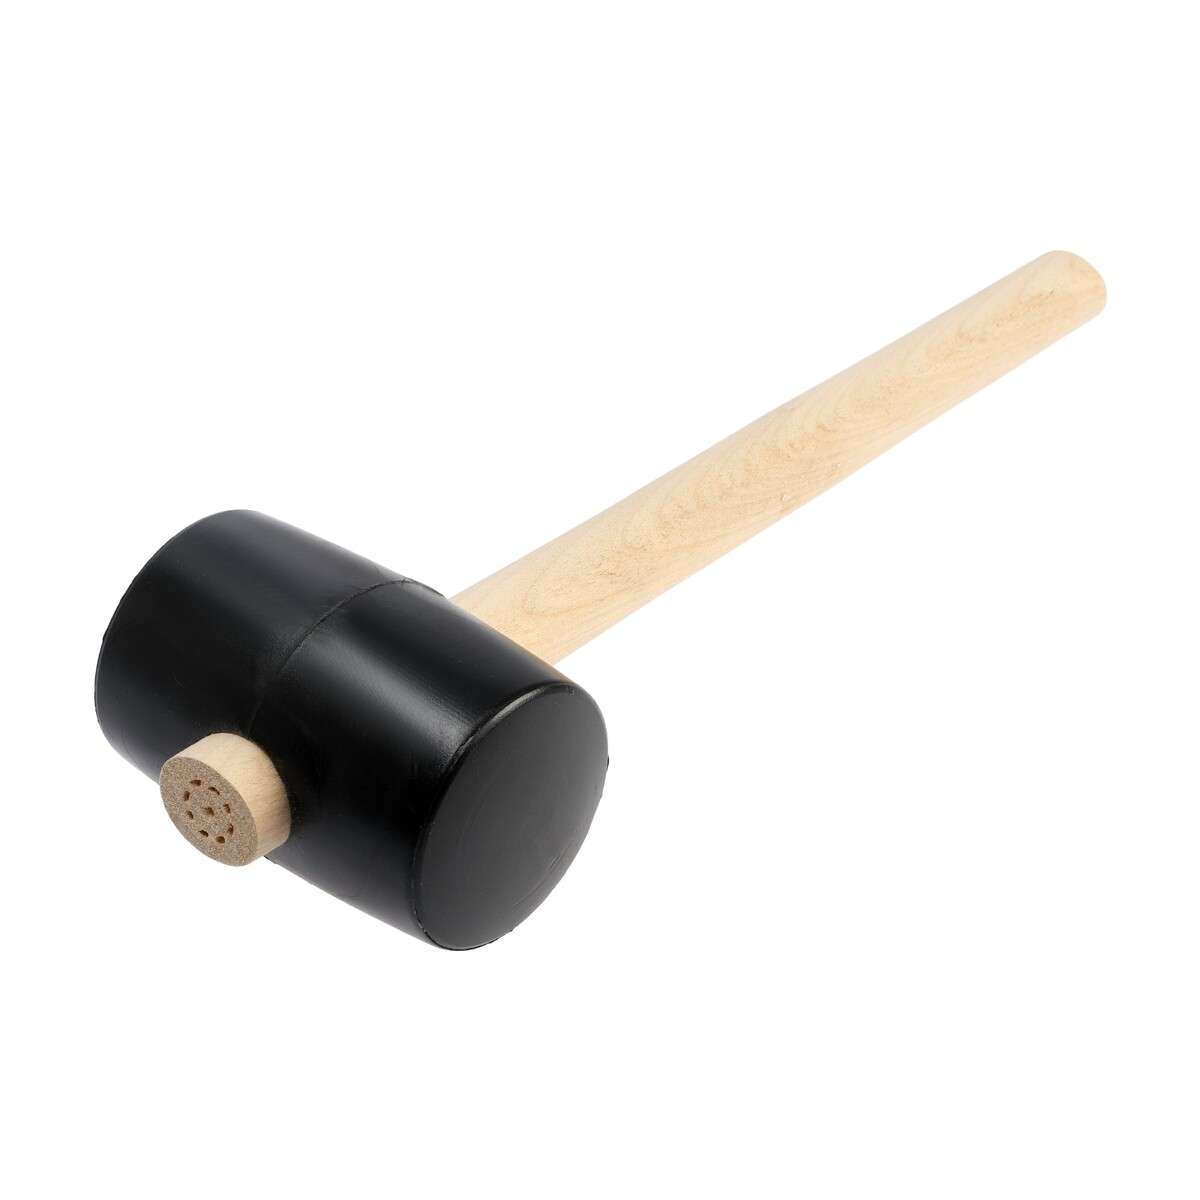 Киянка лом, деревянная рукоятка, черная резина, 65 мм, 500 г киянка лом деревянная рукоятка черная резина 65 мм 500 г